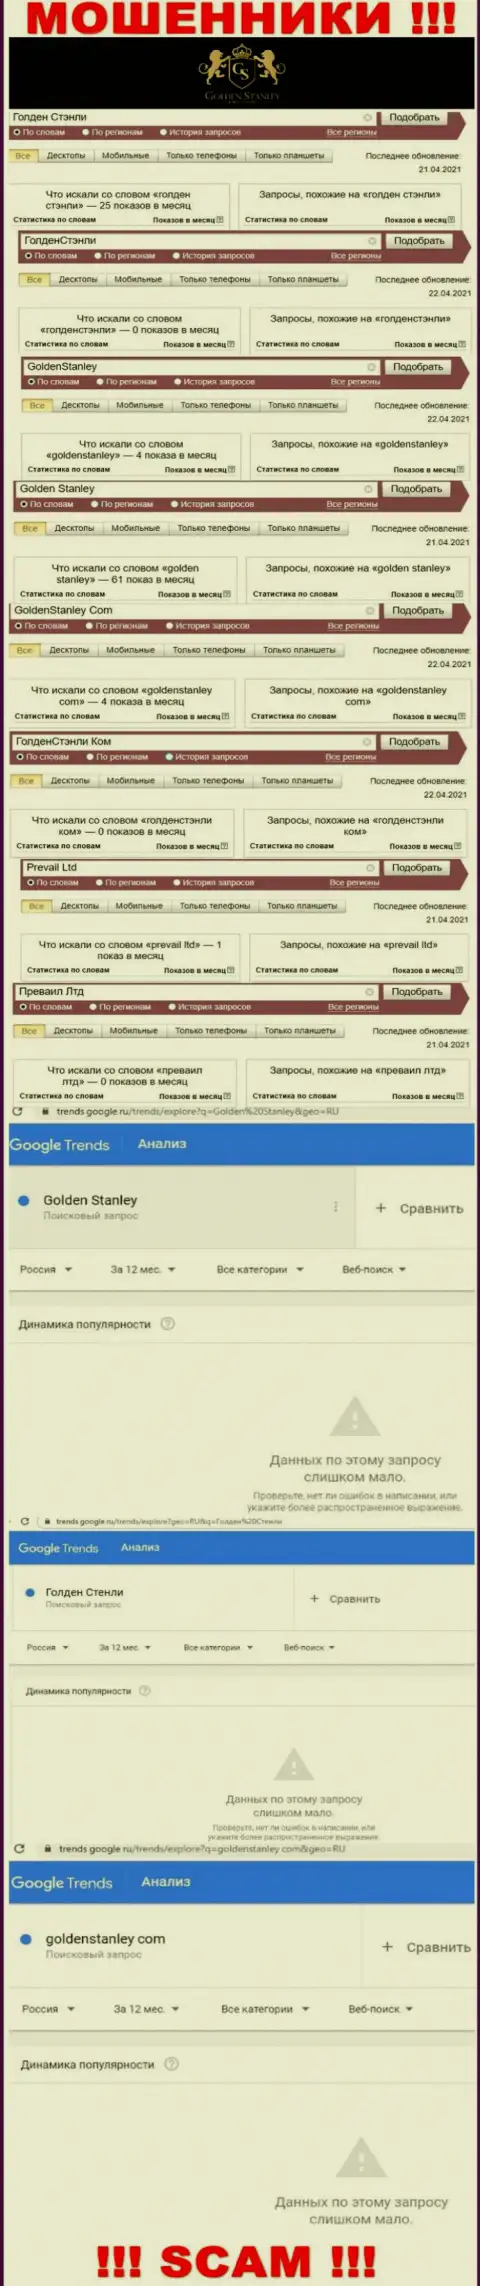 Статистические данные интернет-запросов в поисковиках всемирной паутины касательно мошенников GoldenStanley